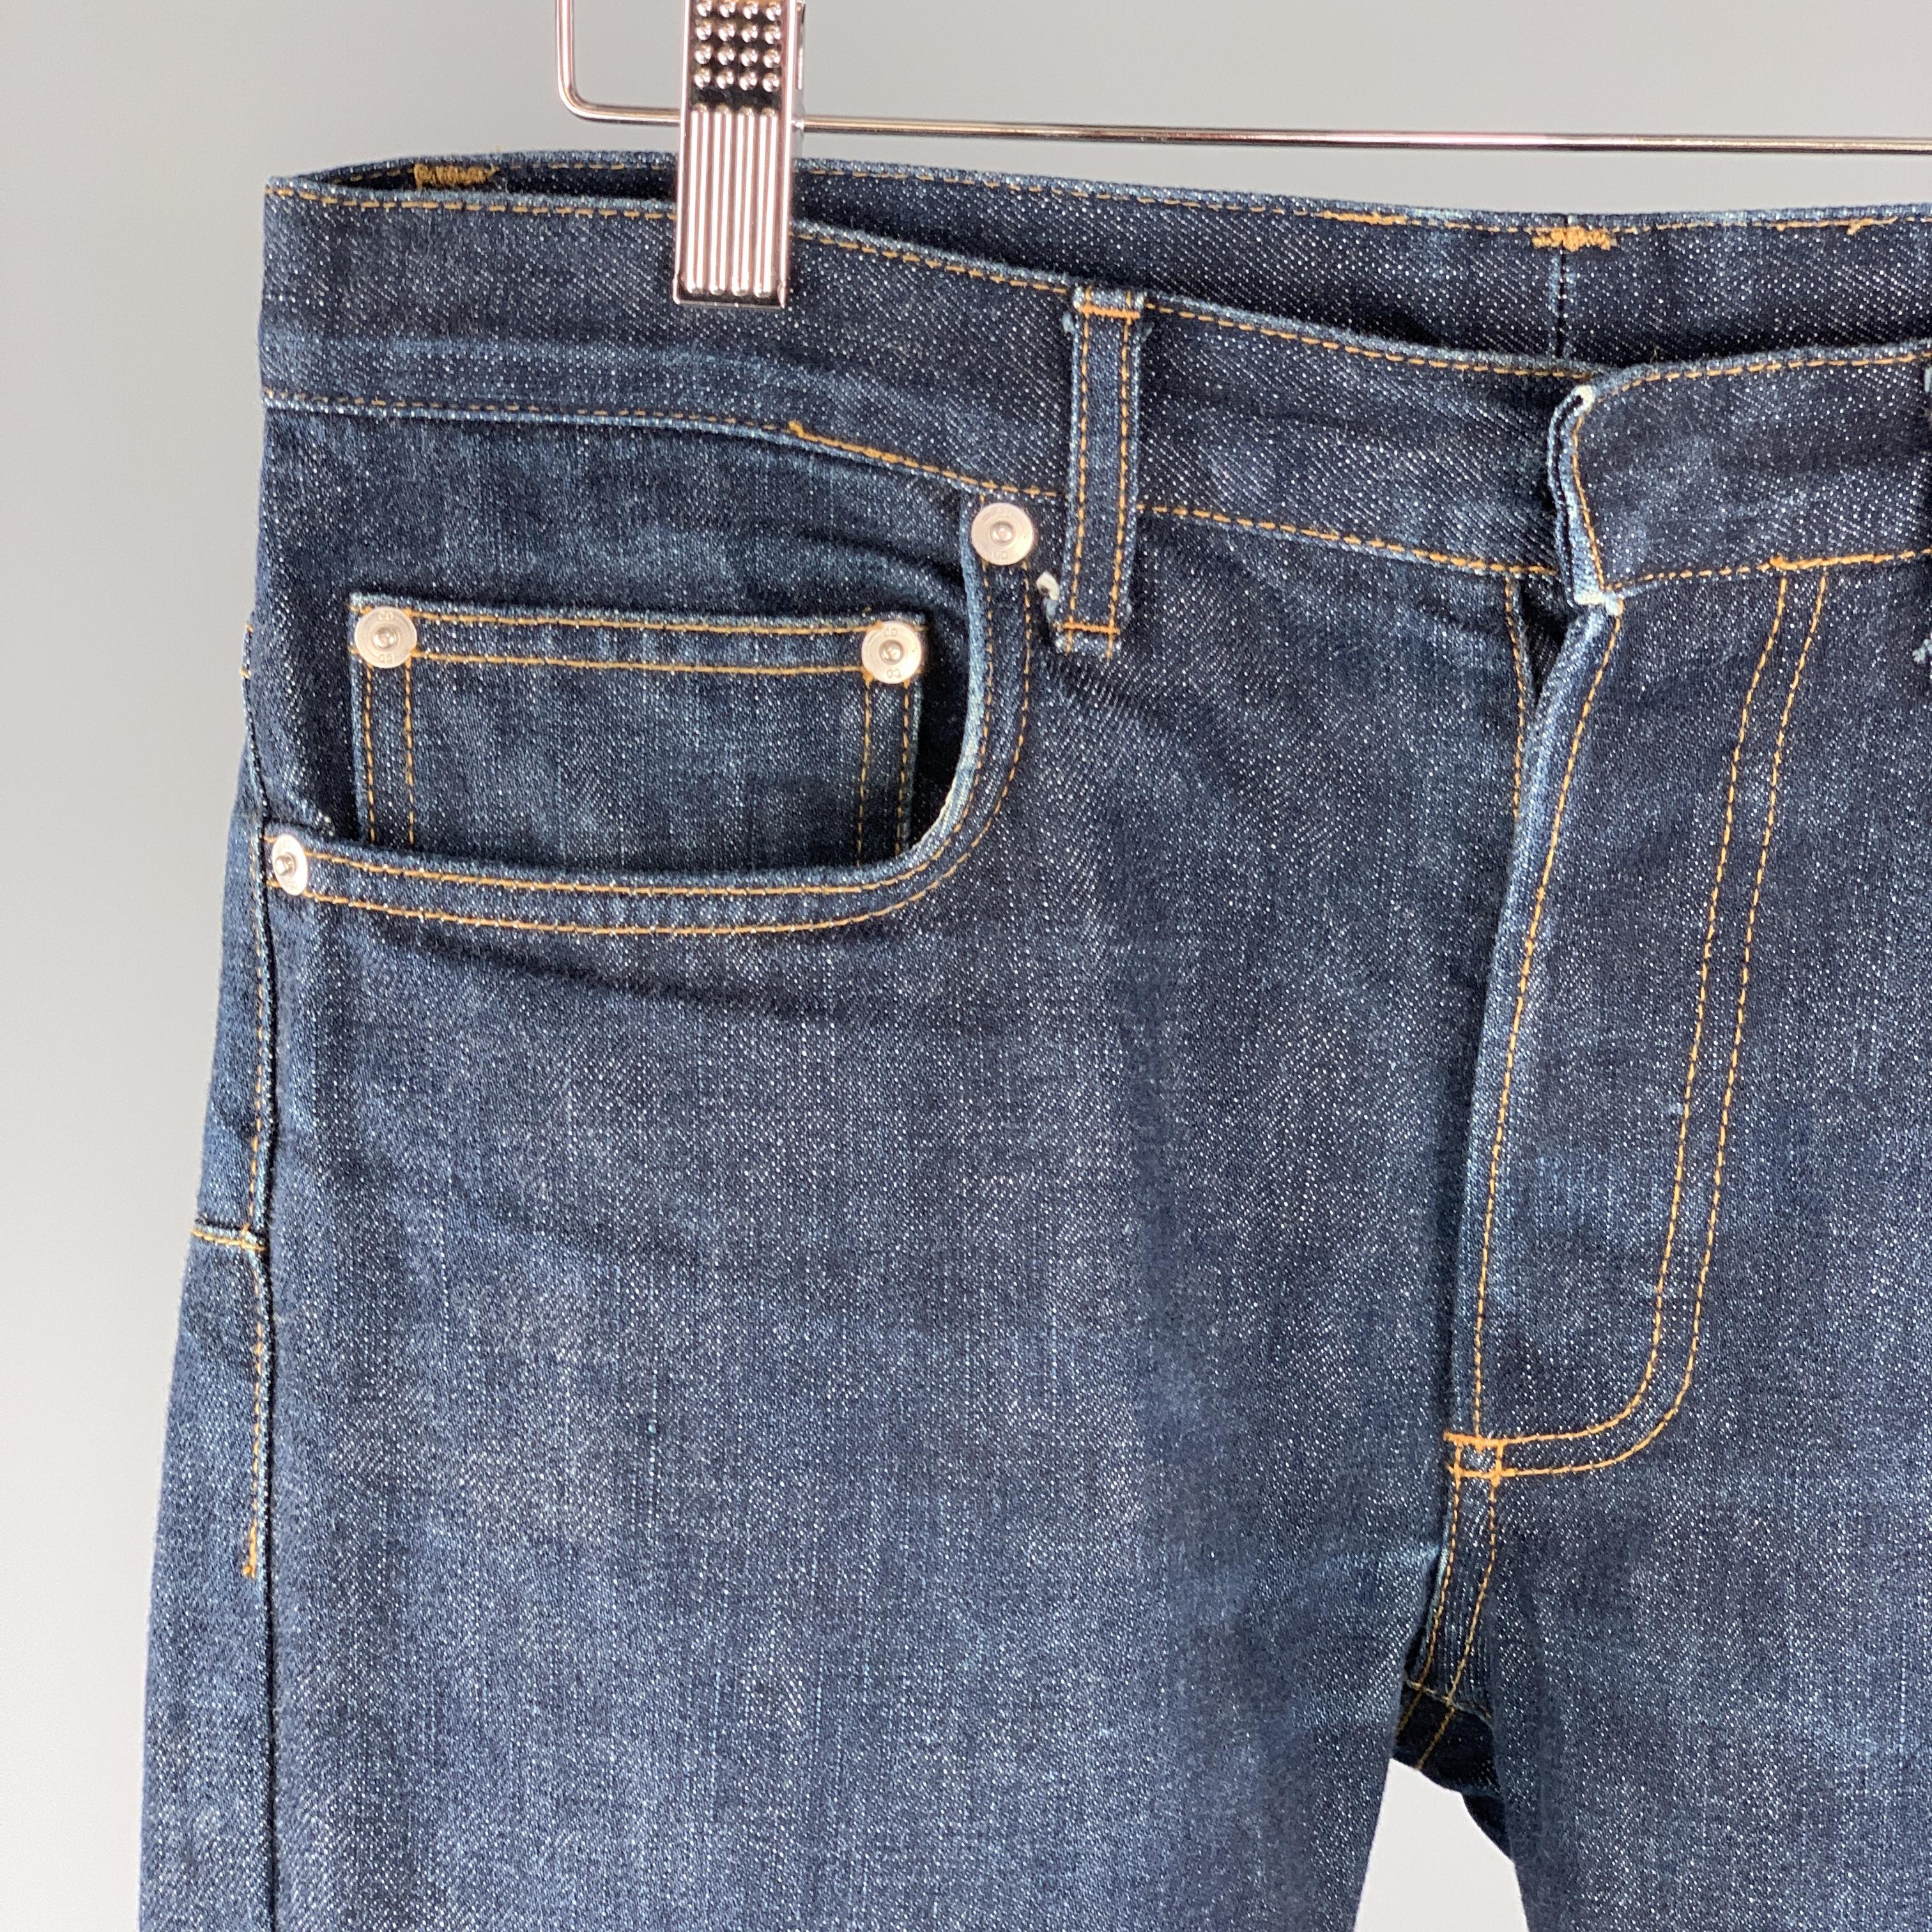 Black DIOR HOMME Size 31 x 29 Indigo Wash Denim Button Fly Jeans